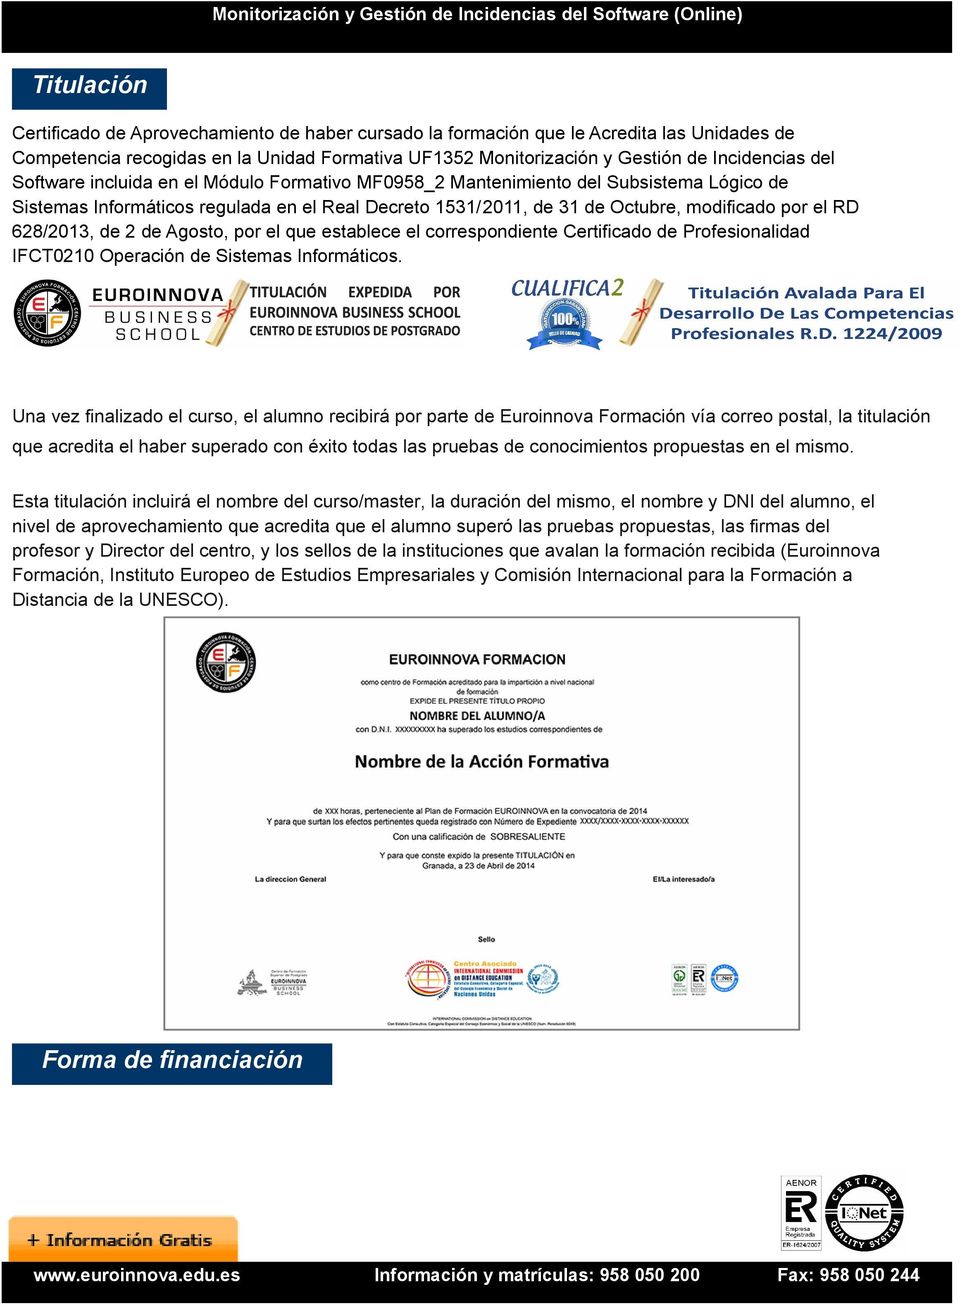 de 2 de Agosto, por el que establece el correspondiente Certificado de Profesionalidad IFCT0210 Operación de Sistemas Informáticos.